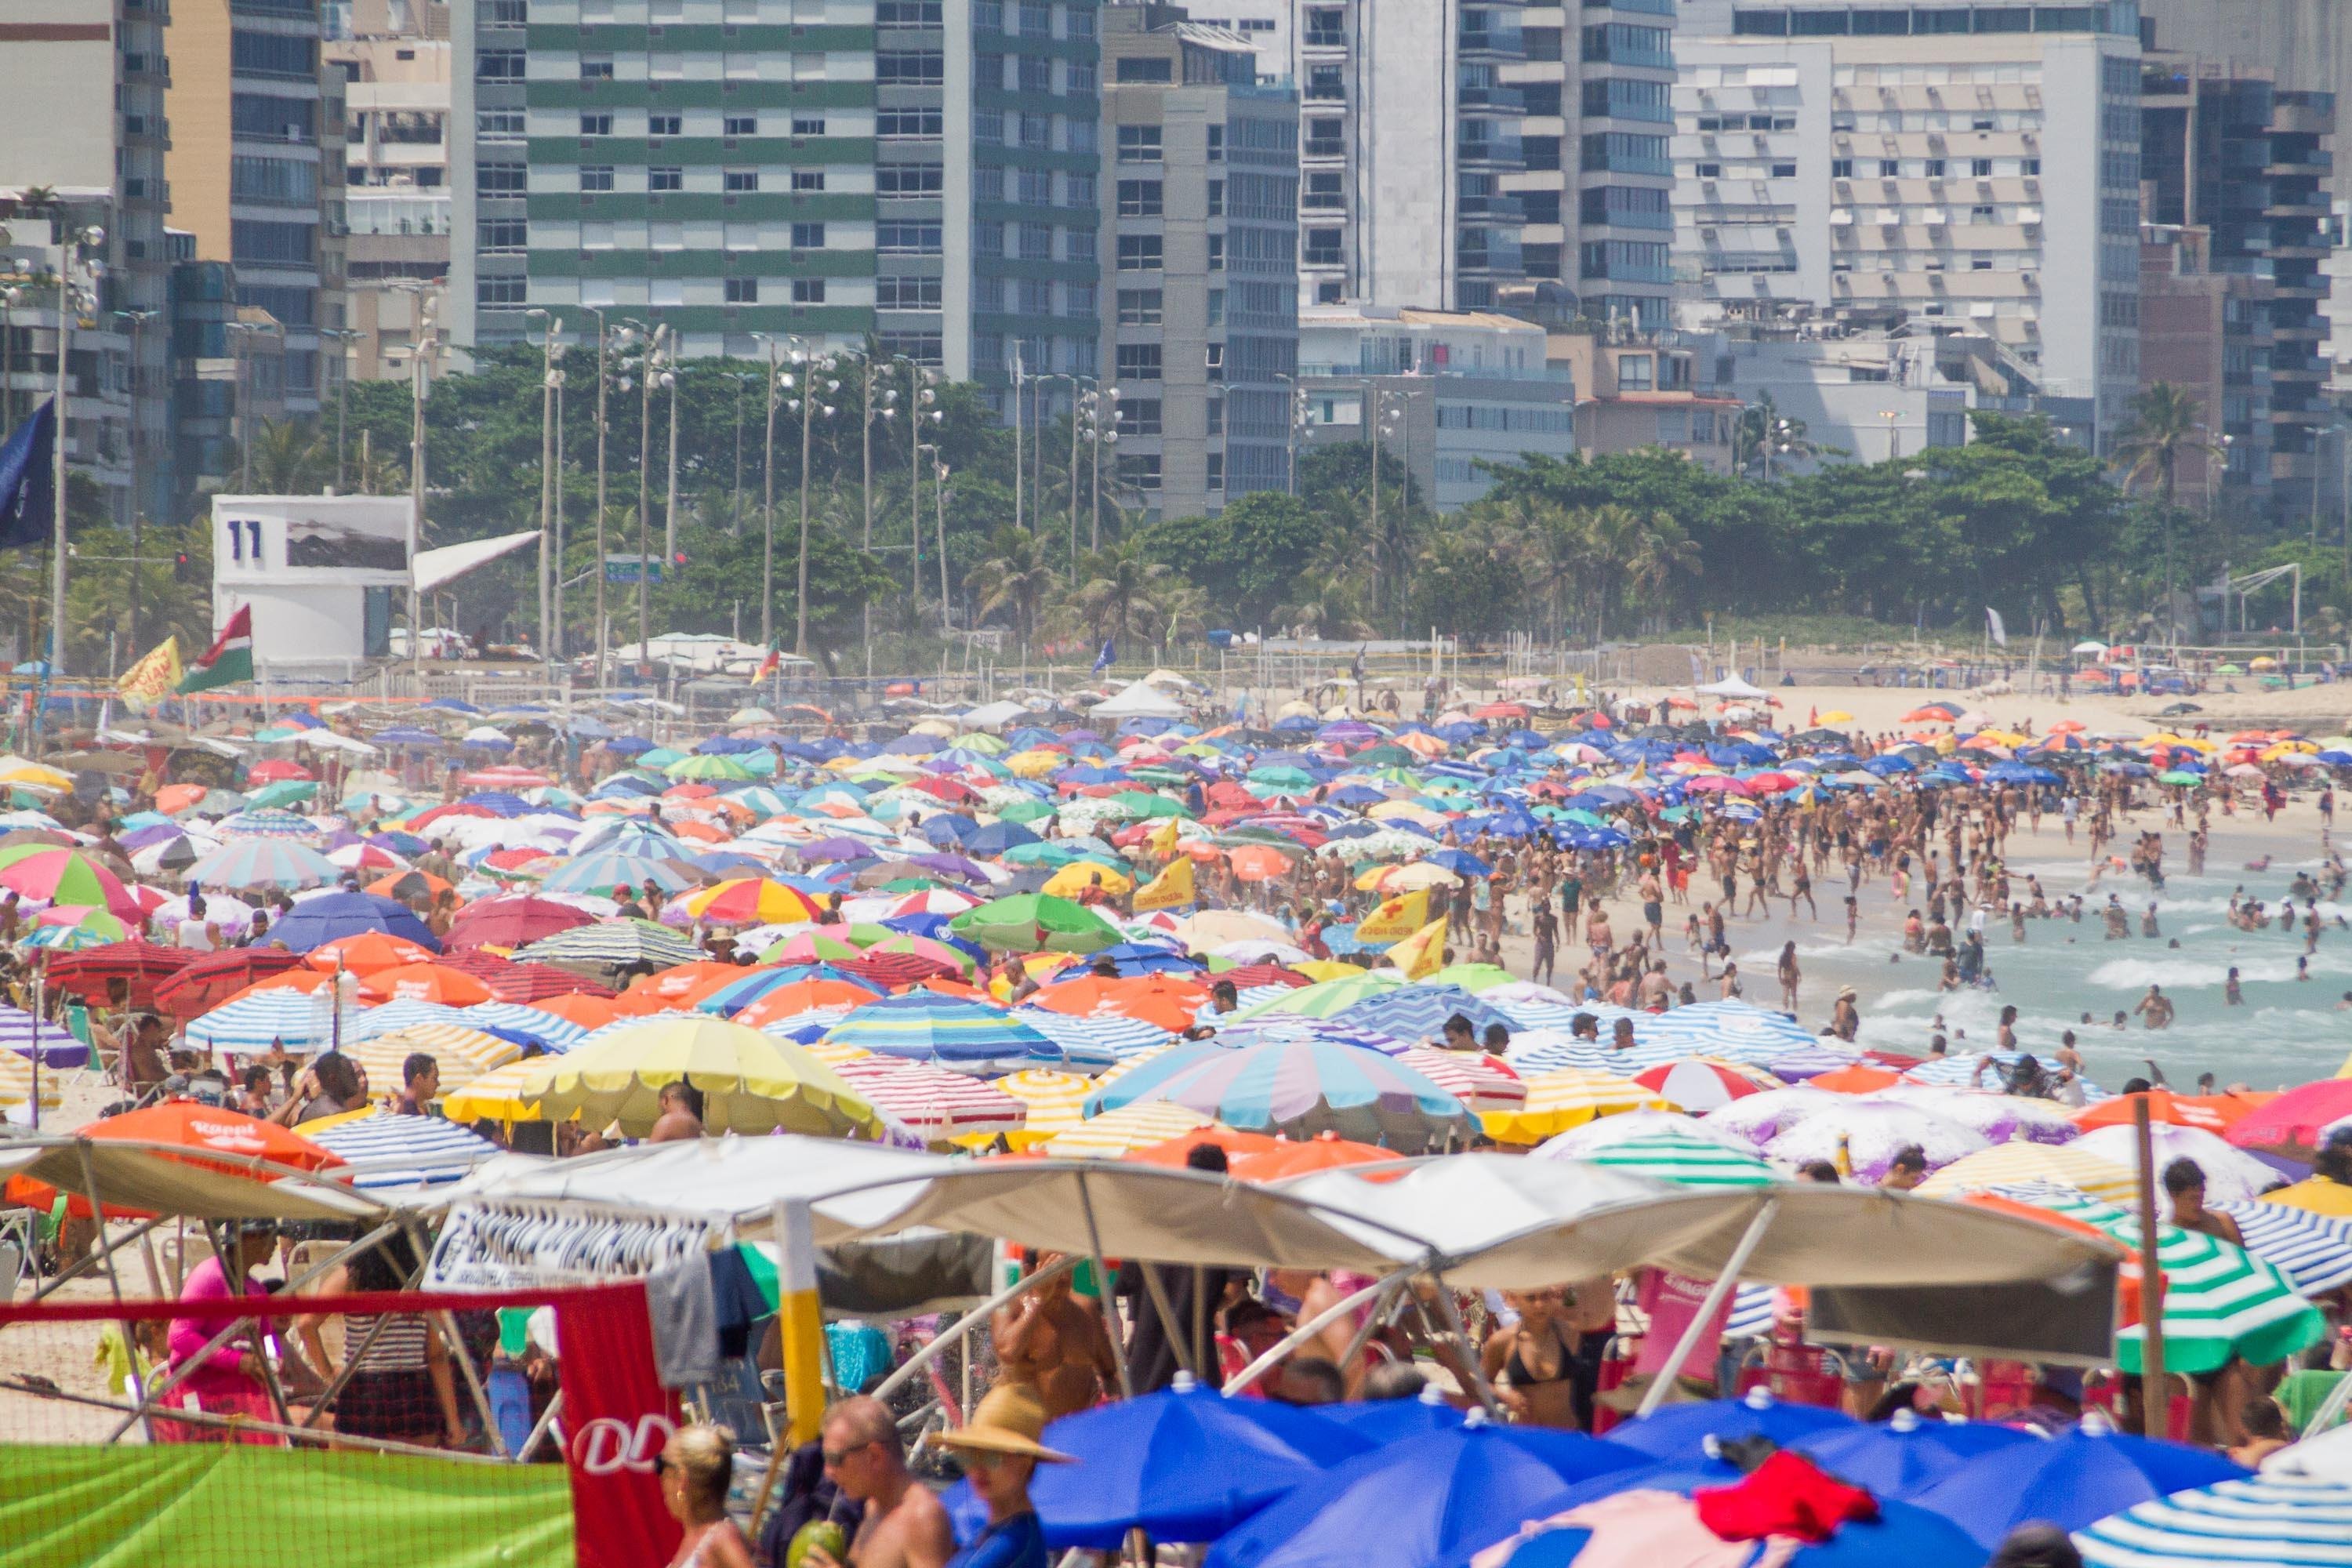 Movimentação na praia do Leblon, no Rio de Janeiro (RJ), neste domingo (14).